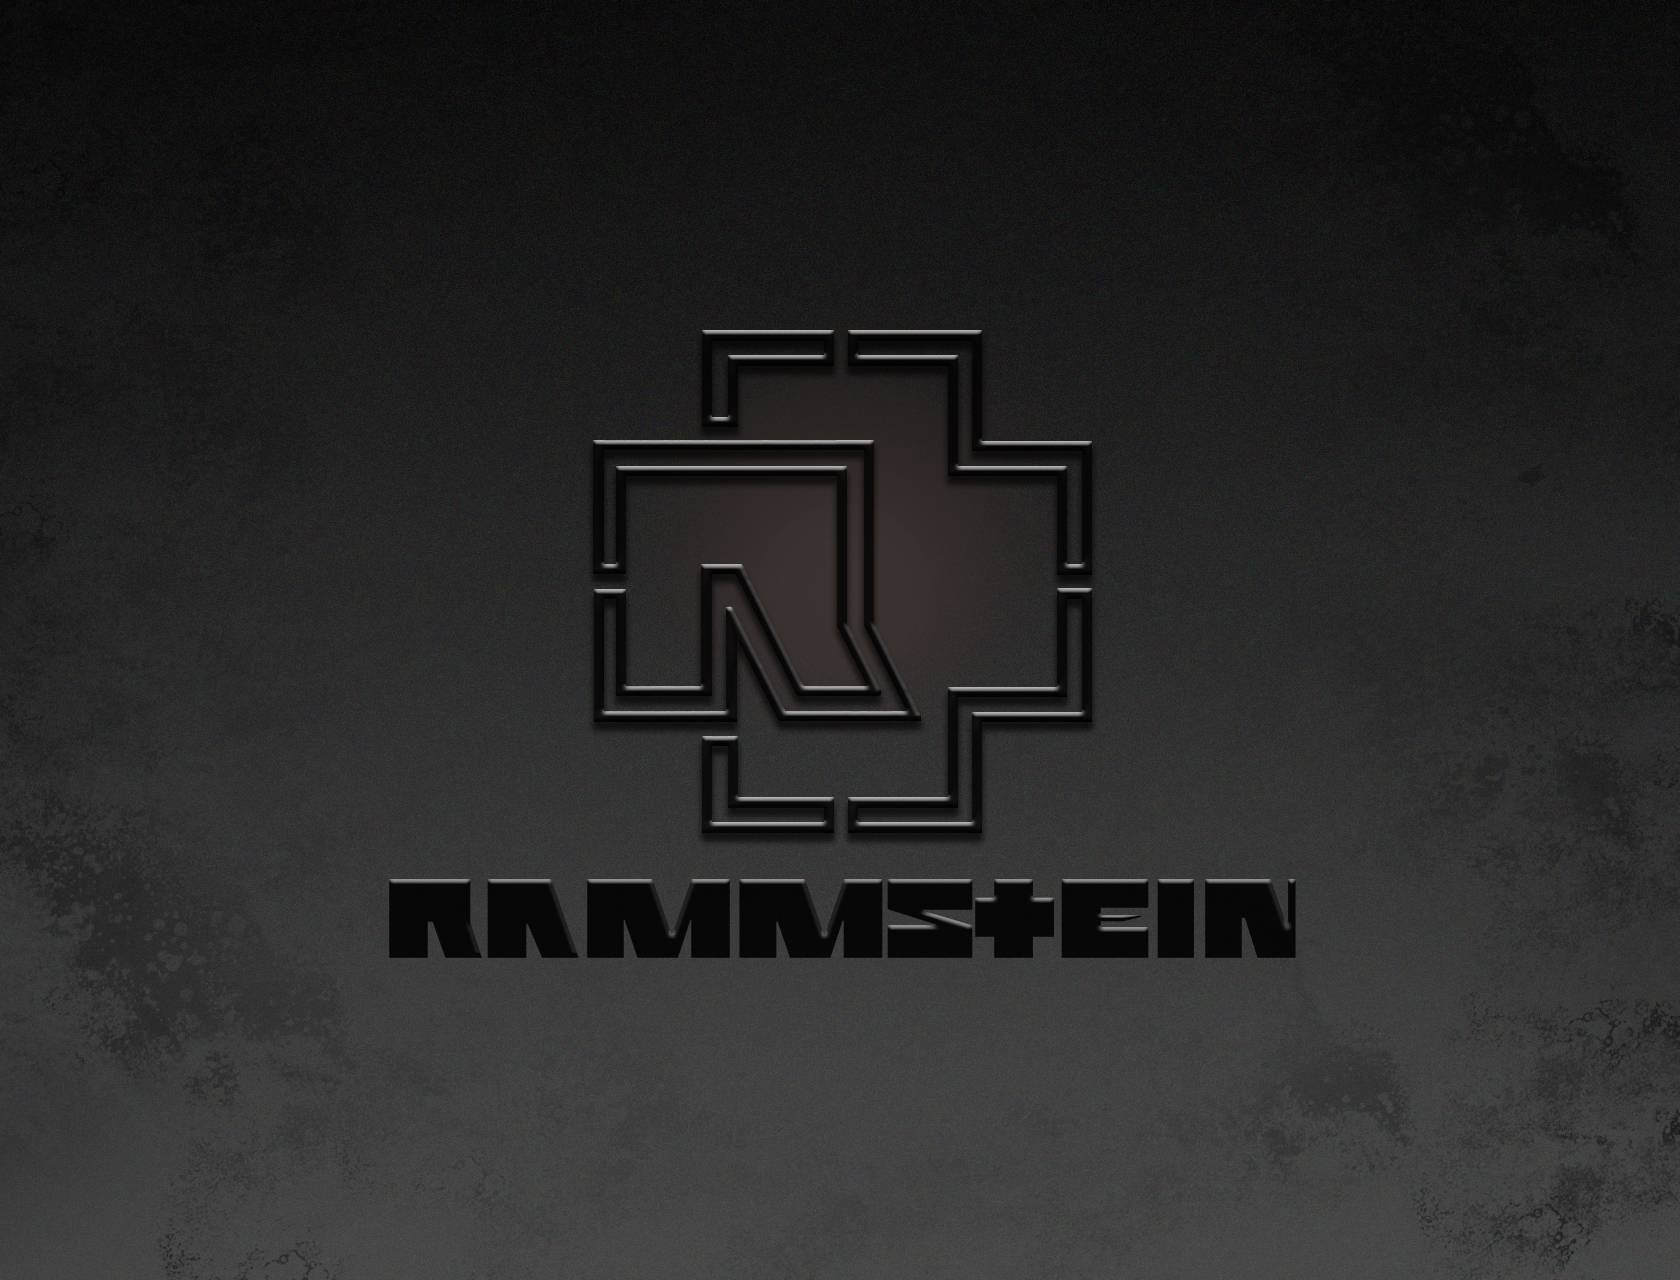 Rammstein Background